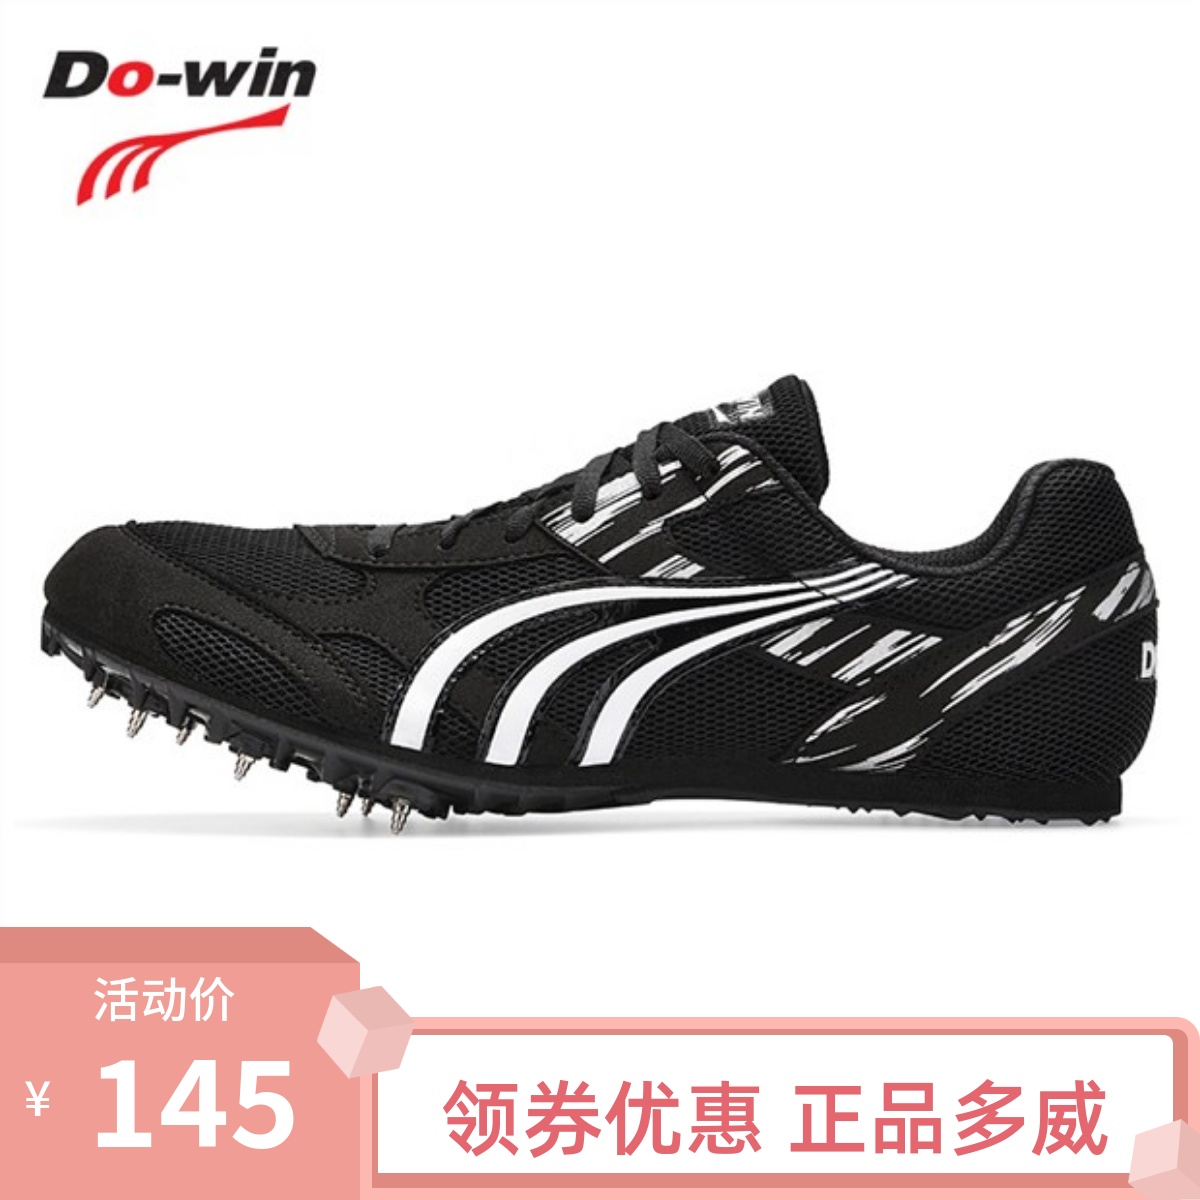 多威钉鞋短跑男女体育生防滑透气田径男专业跑步训练比赛鞋PD2510